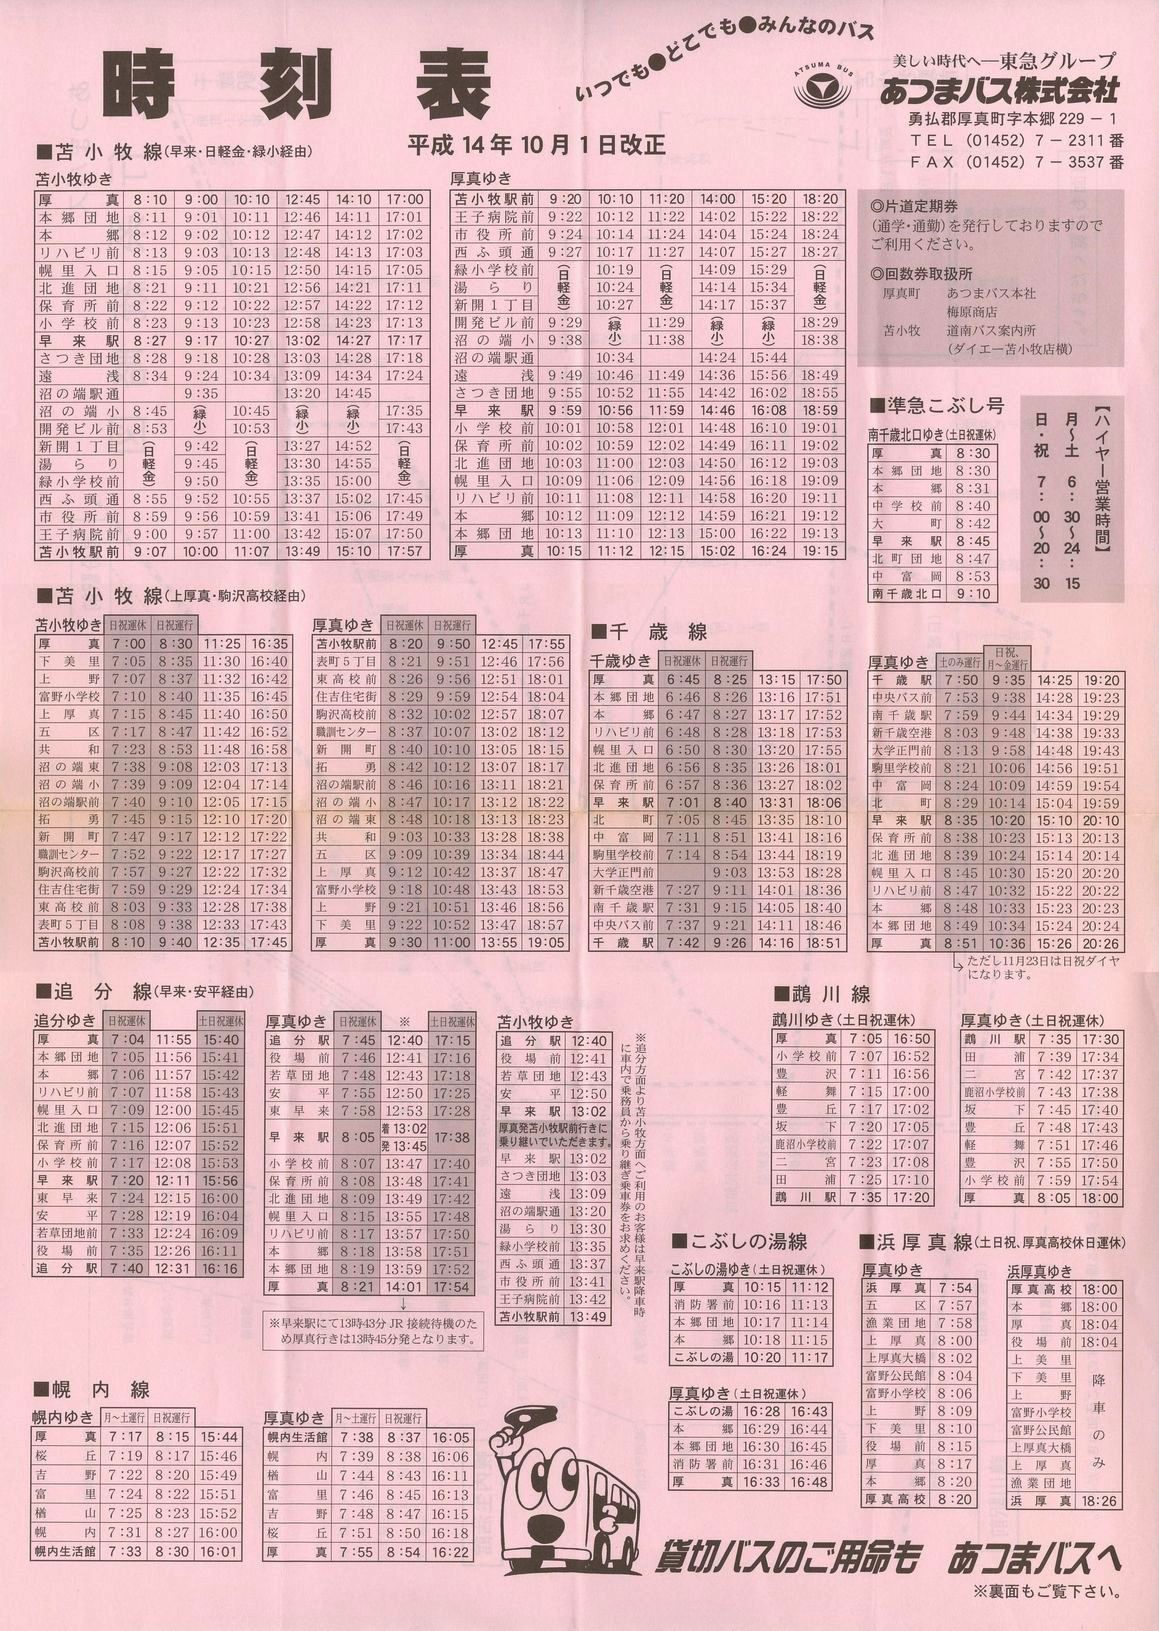 2002-10-01改正_あつまバス_時刻表表面